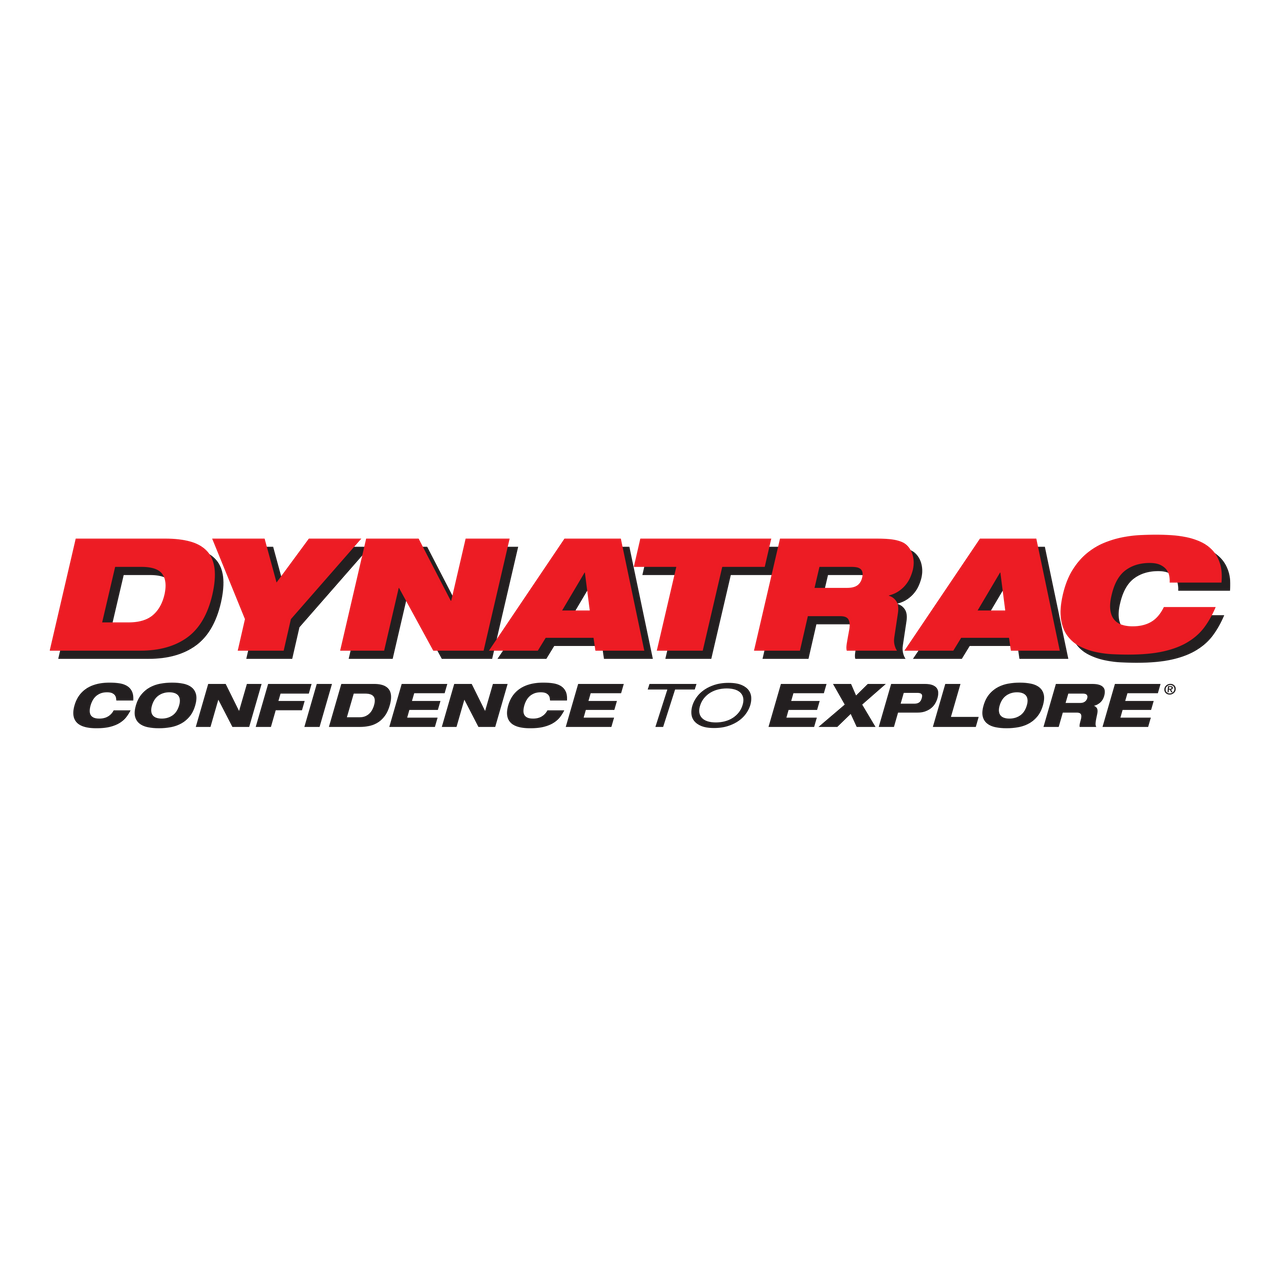 Dynatrac Free-Spin Kit, 1999-04 Ford F250/F350, w/Warn Hubs, Coarse & Fine Studs